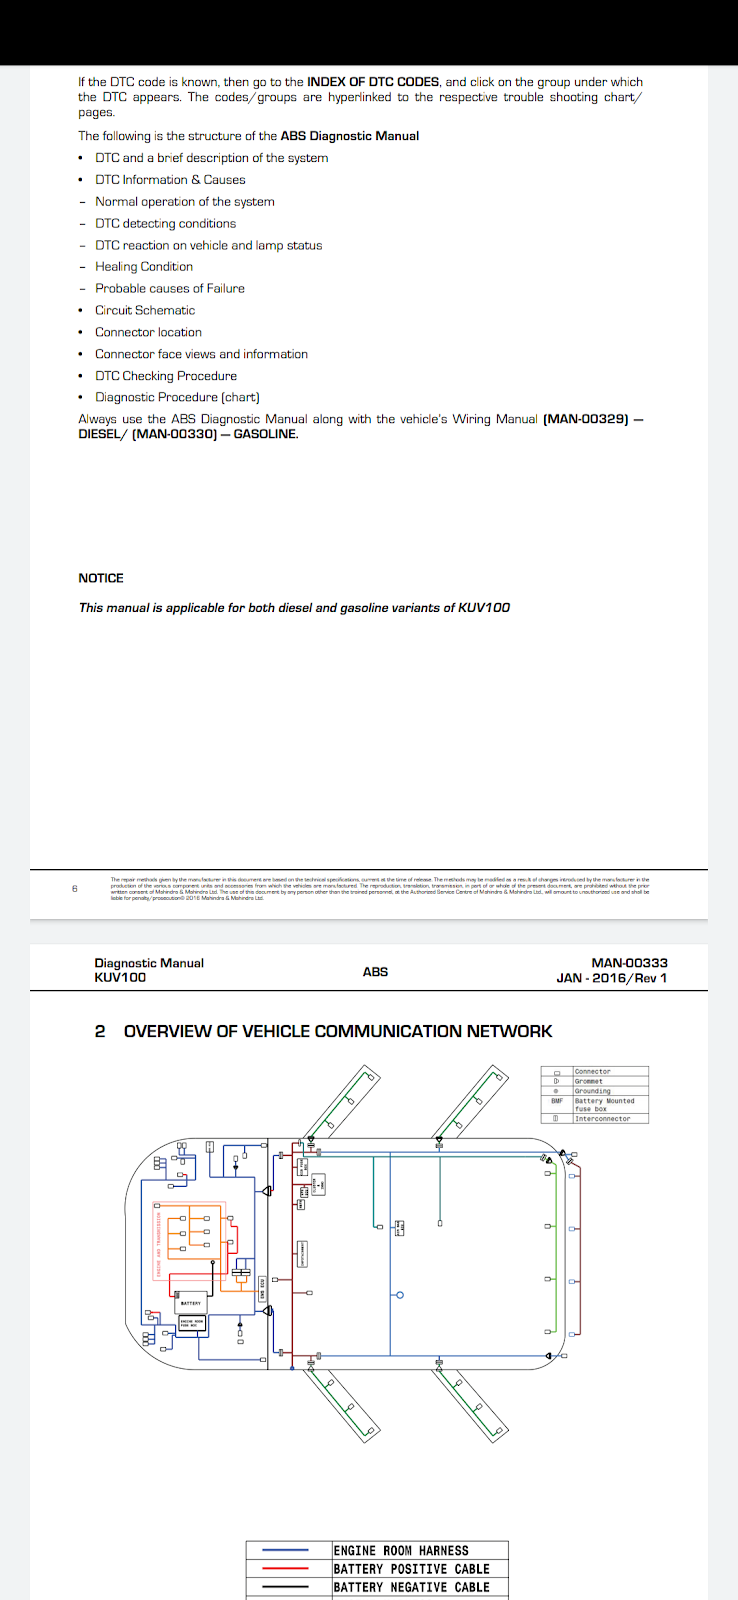 Mahindra vehicle wiring diagram scorpio abs